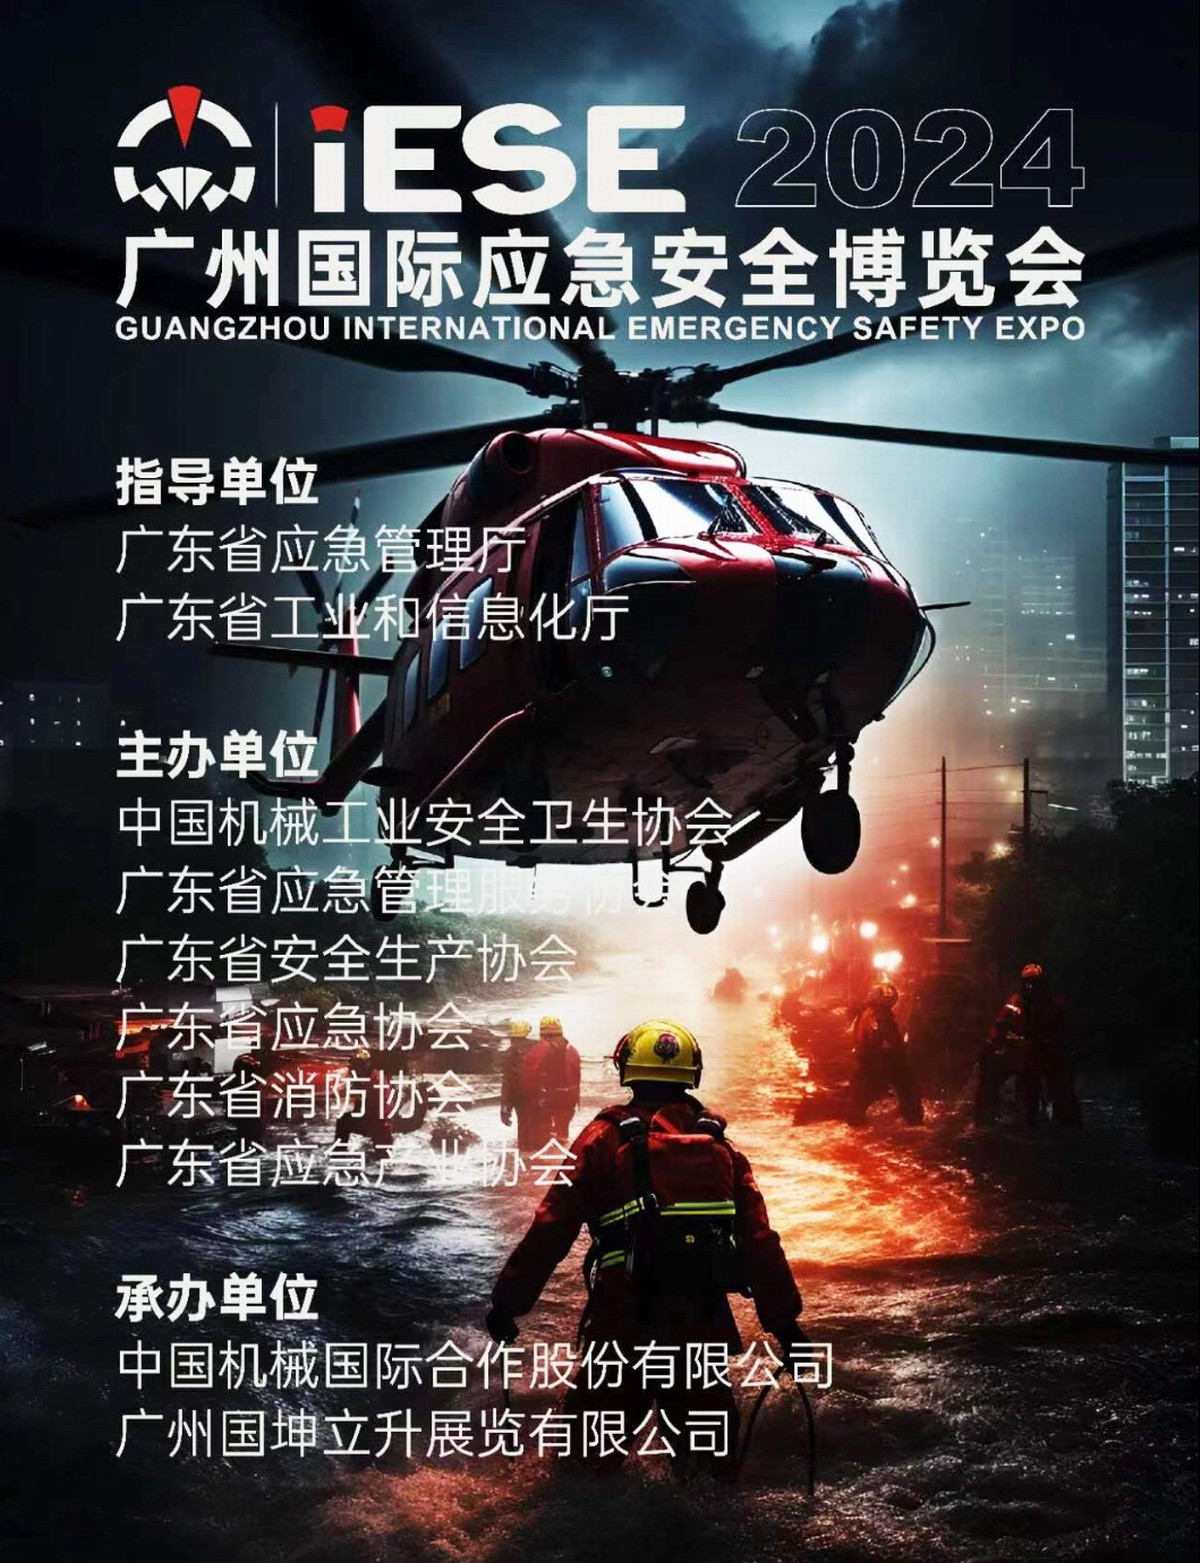 2024 Guangzhou International Emergency Safety Expo - www.globalomp.com